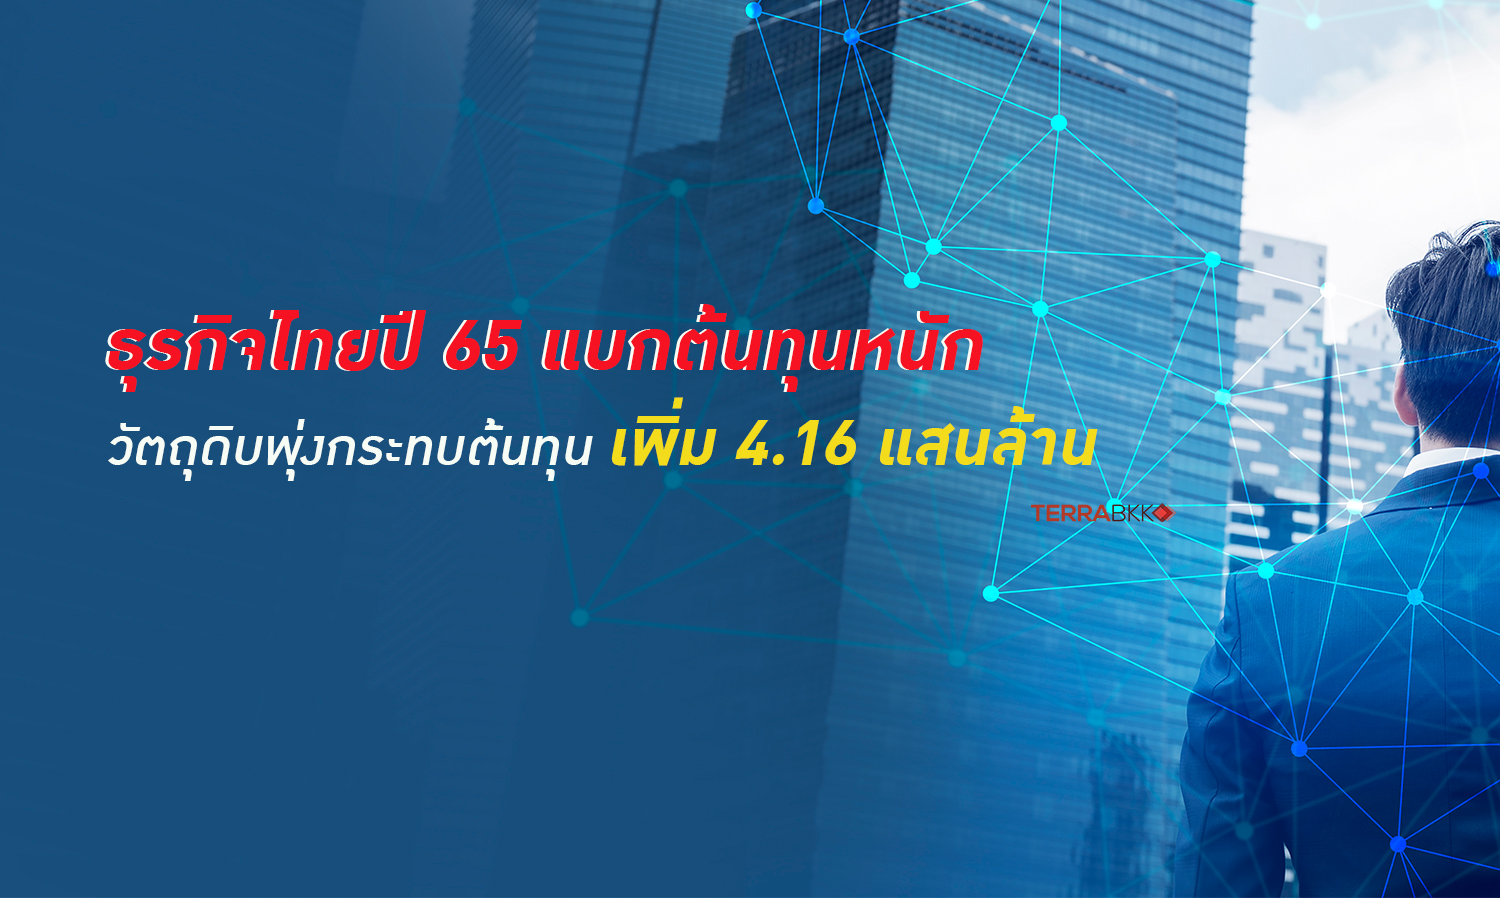 ธุรกิจไทยปี 65 แบกต้นทุนหนัก วัตถุดิบพุ่ง คาดกระทบภาระต้นทุนเพิ่ม 4.16 แสนล้าน